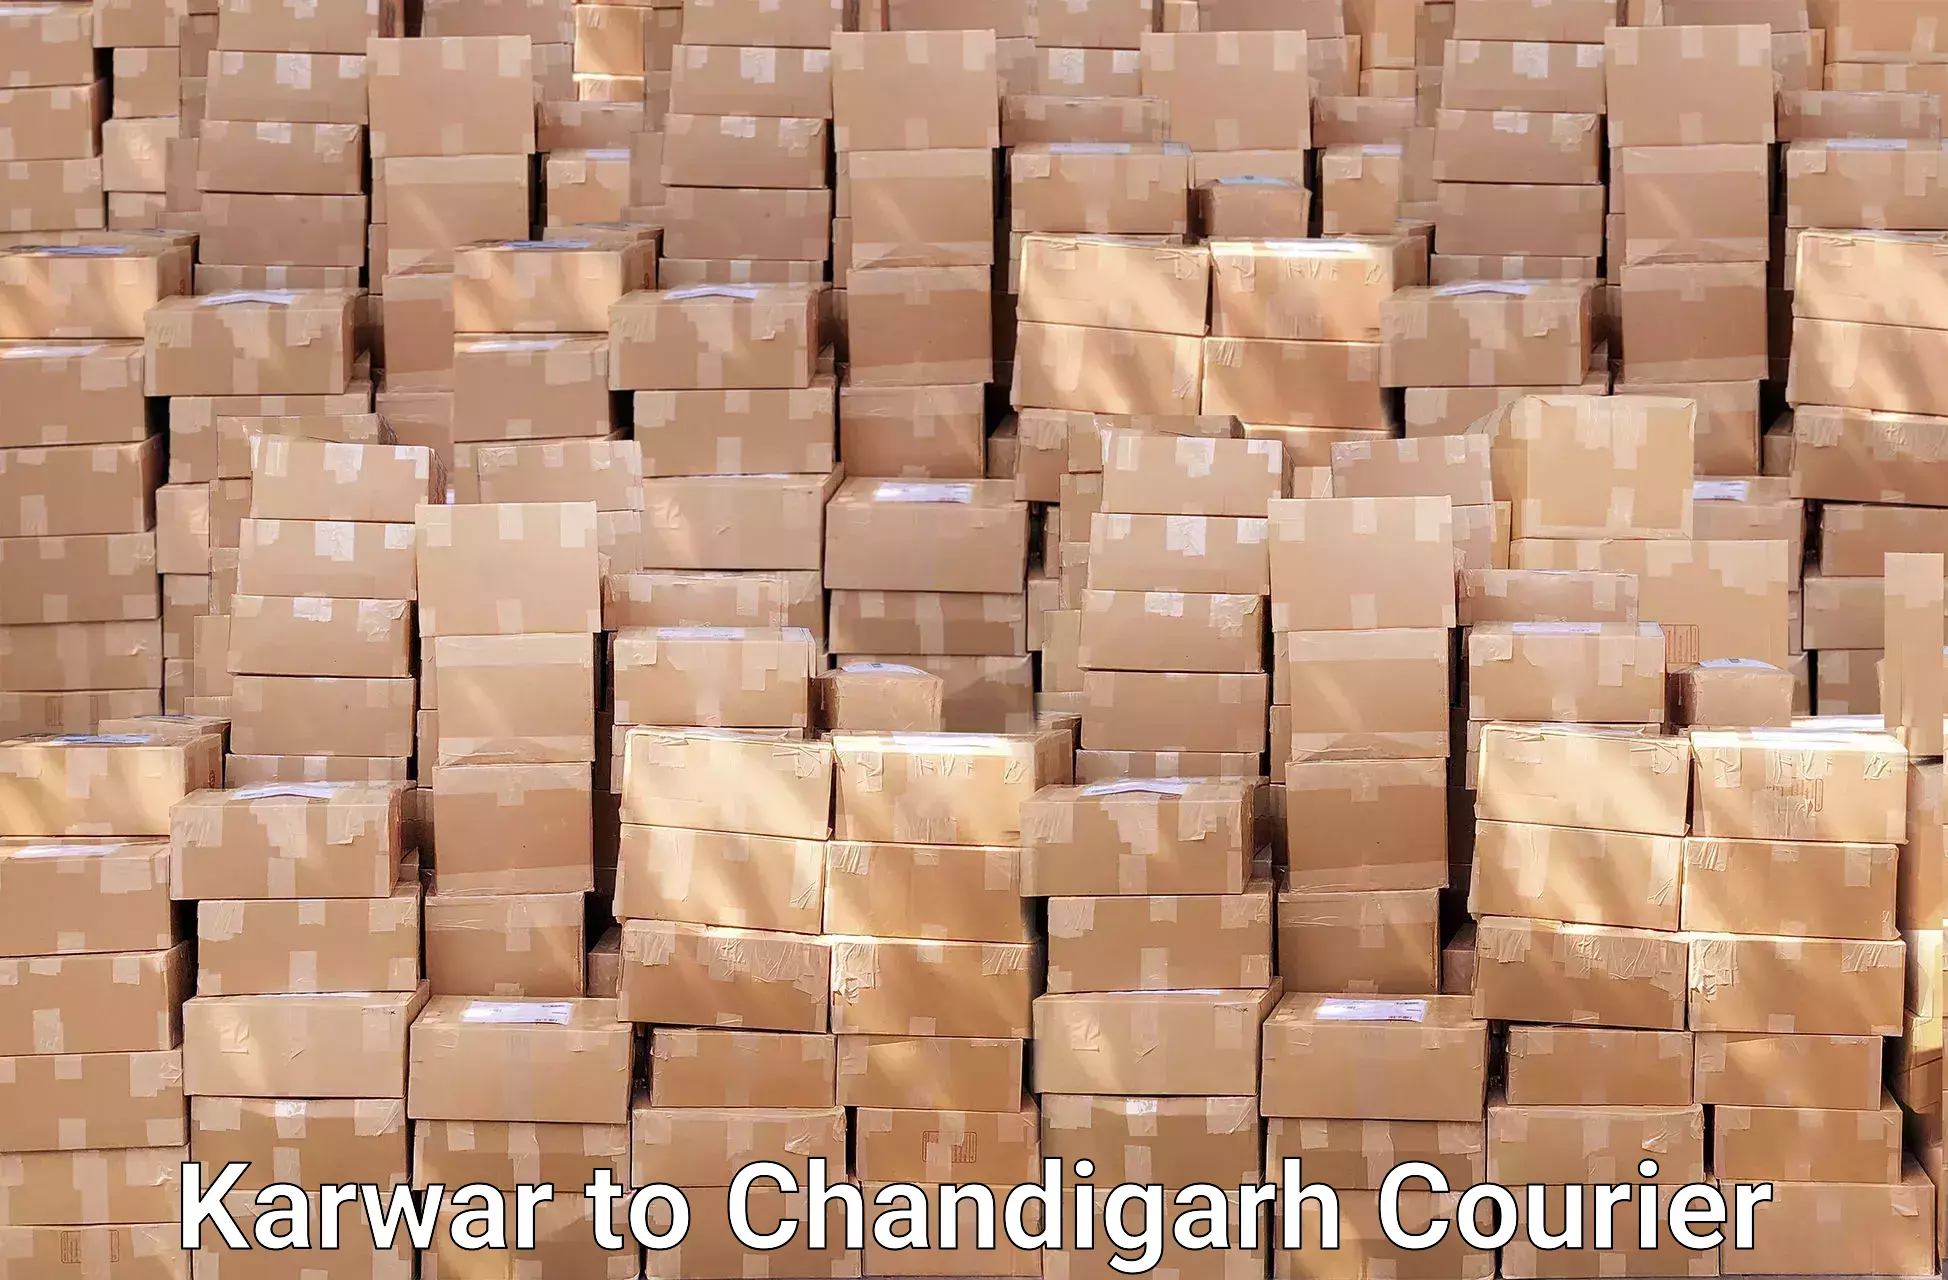 Comprehensive relocation services Karwar to Chandigarh